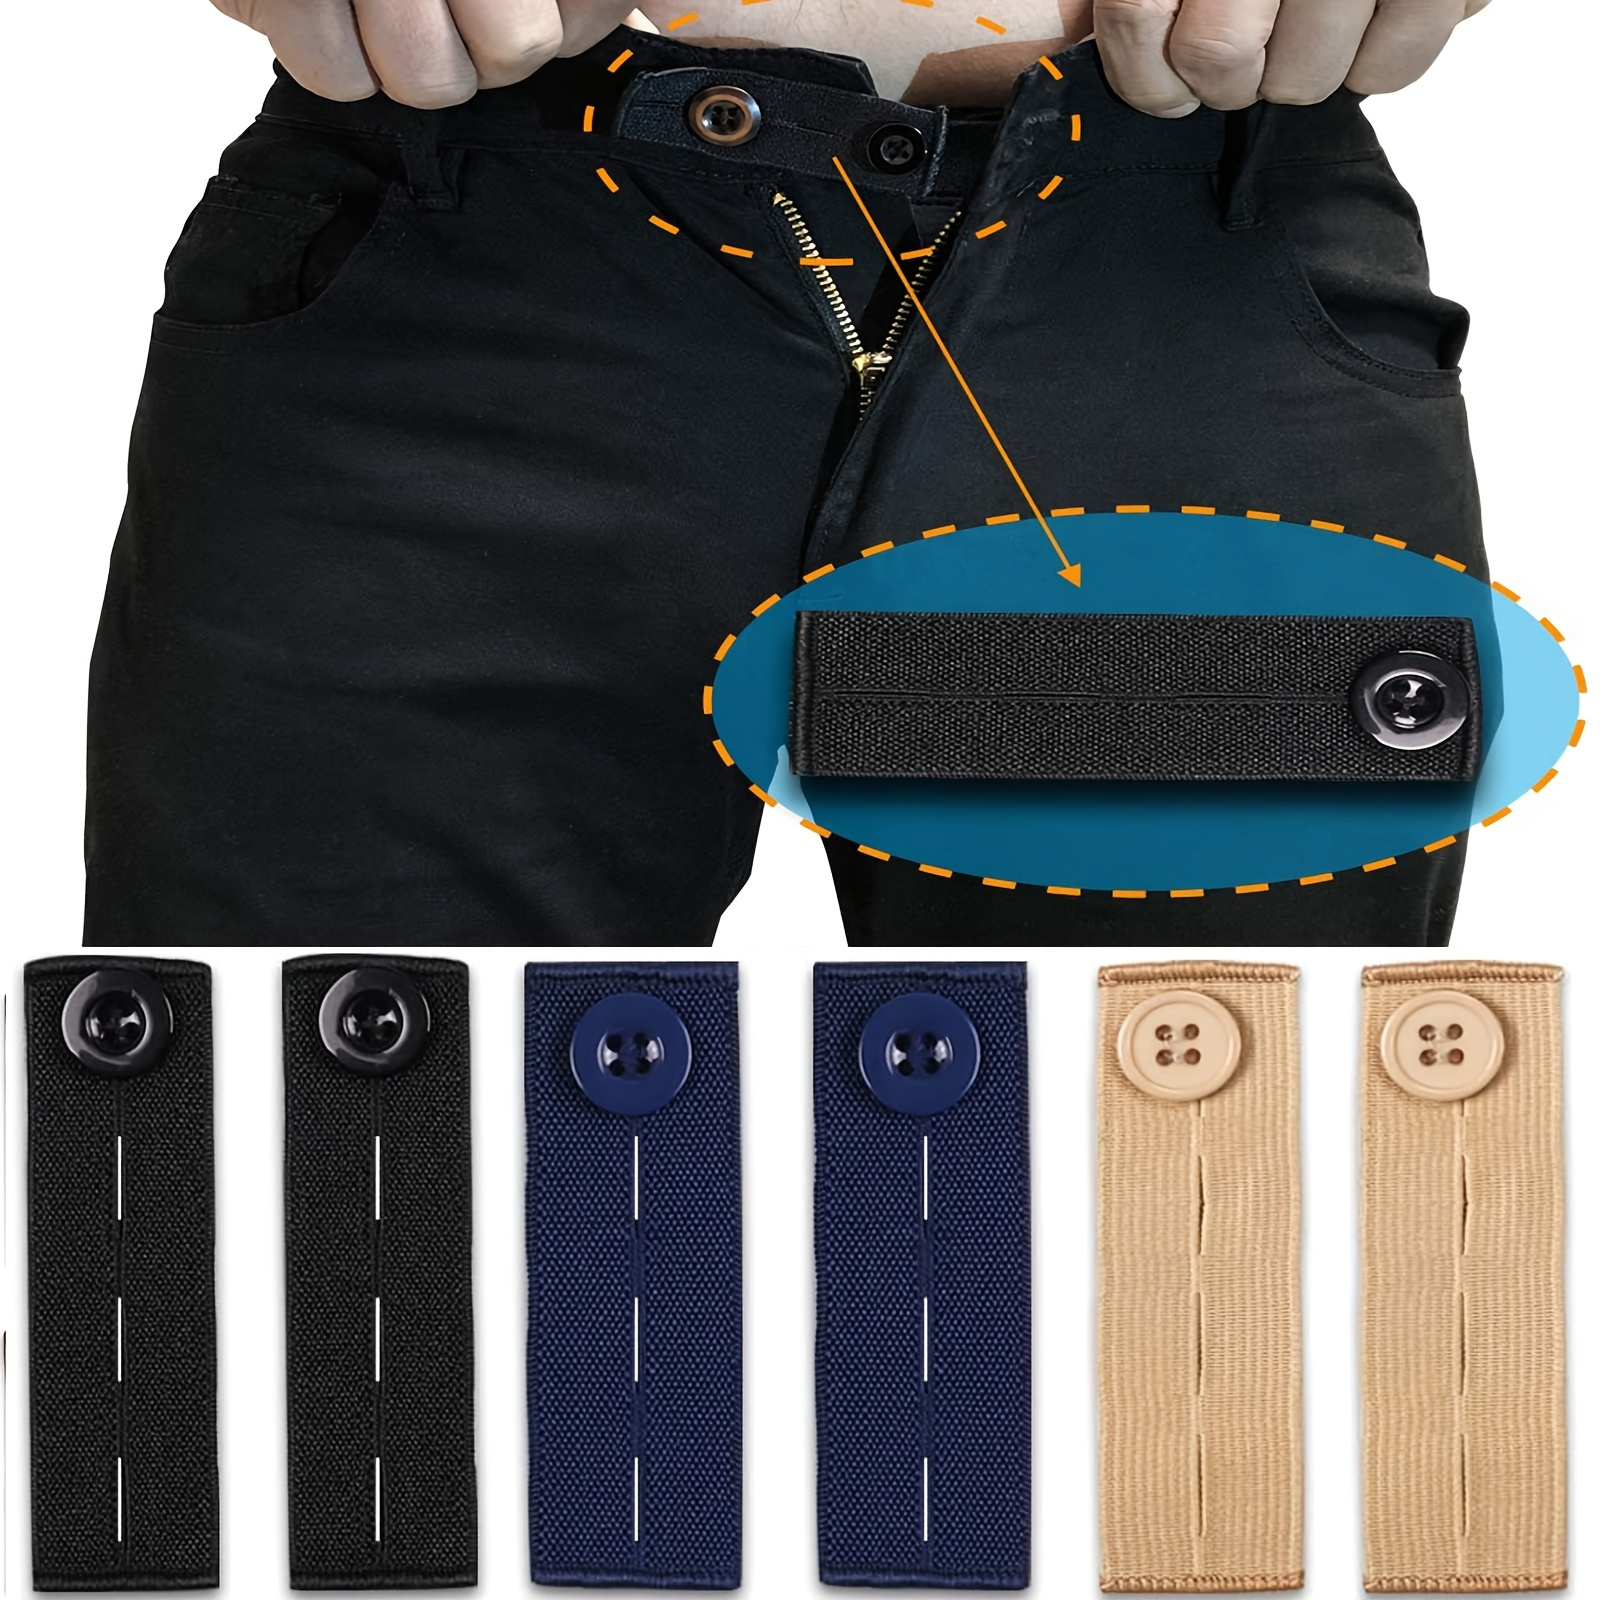 5pcs Button Extender For Pants Adjustable Waist Button Retractable